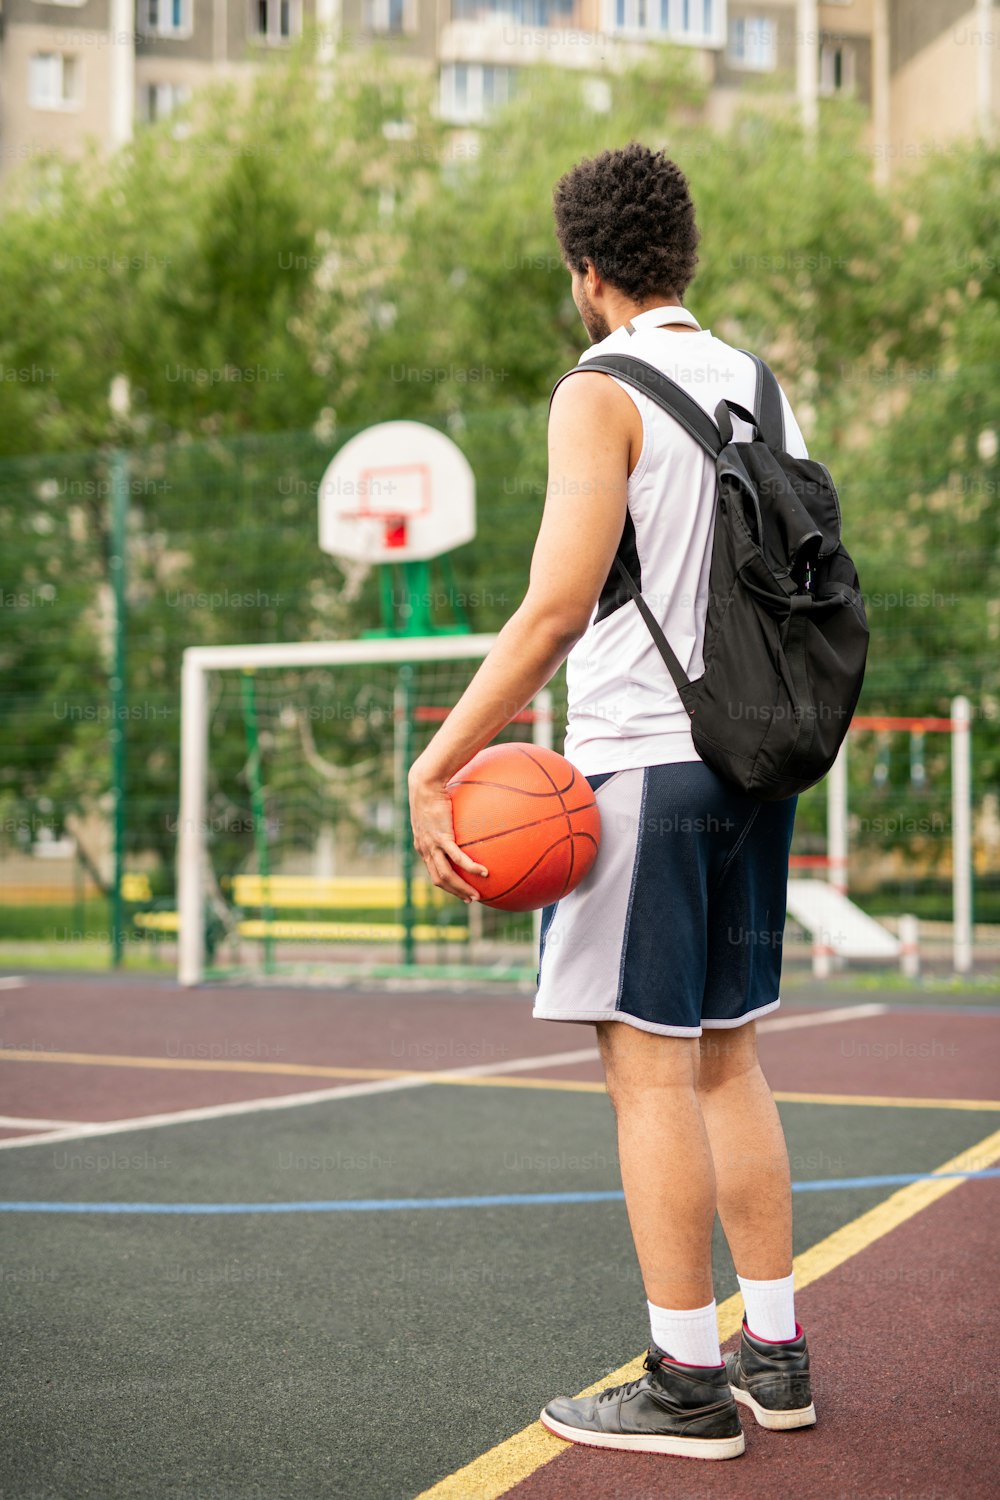 공과 배낭을 멘 젊은 활동적인 남자 농구 선수가 놀이터에 하얀 선 옆에 서 있다